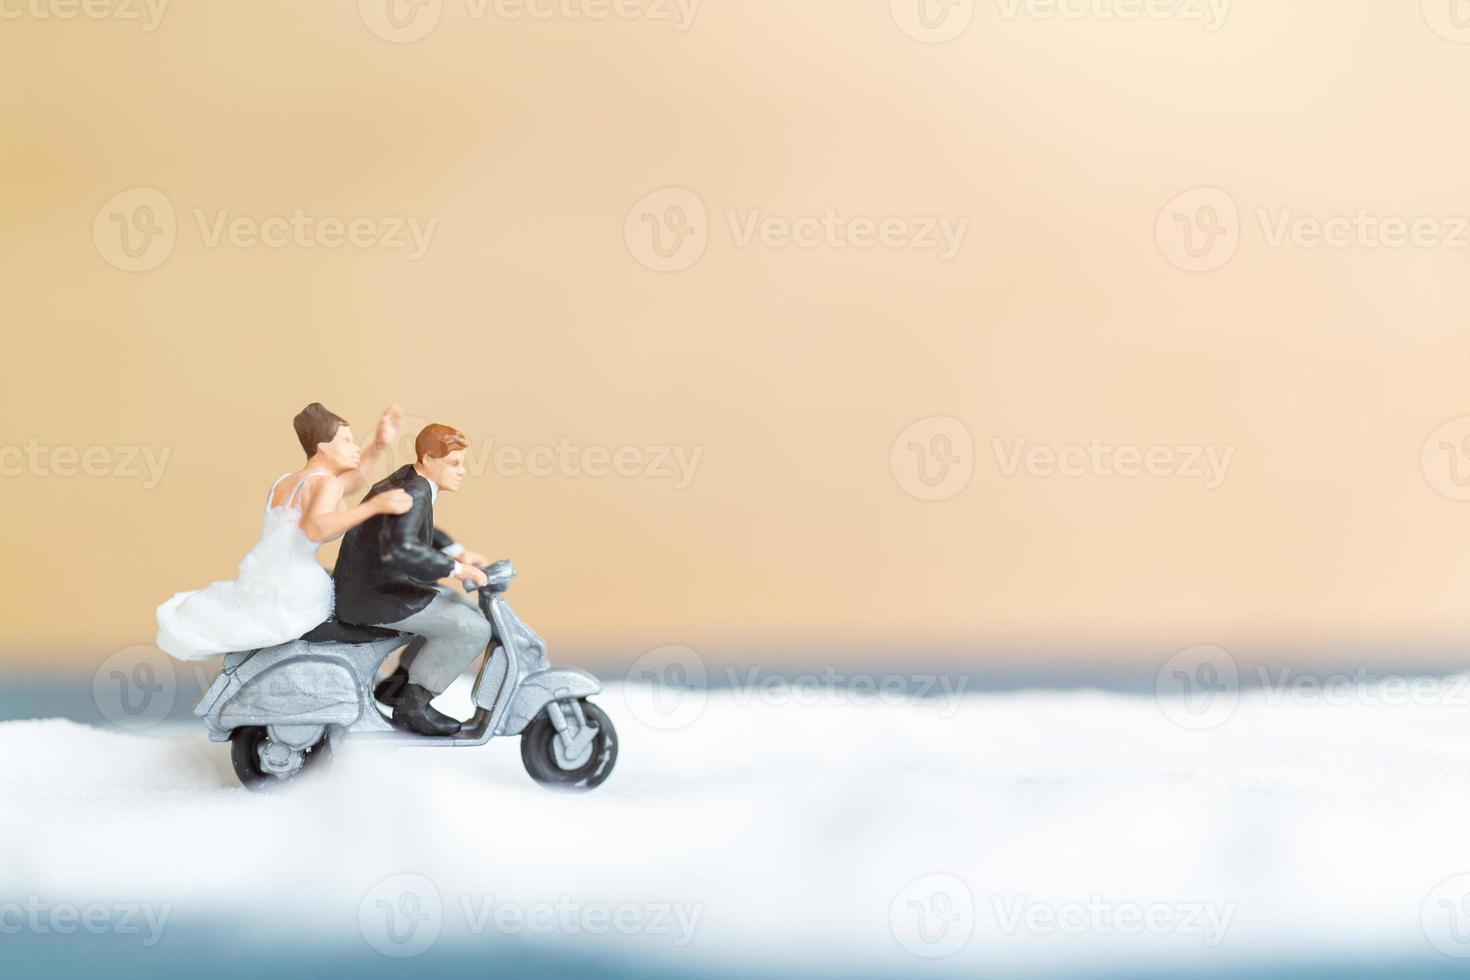 personnes miniatures, couple de mariage heureux sur une plage blanche, concept de mariage photo